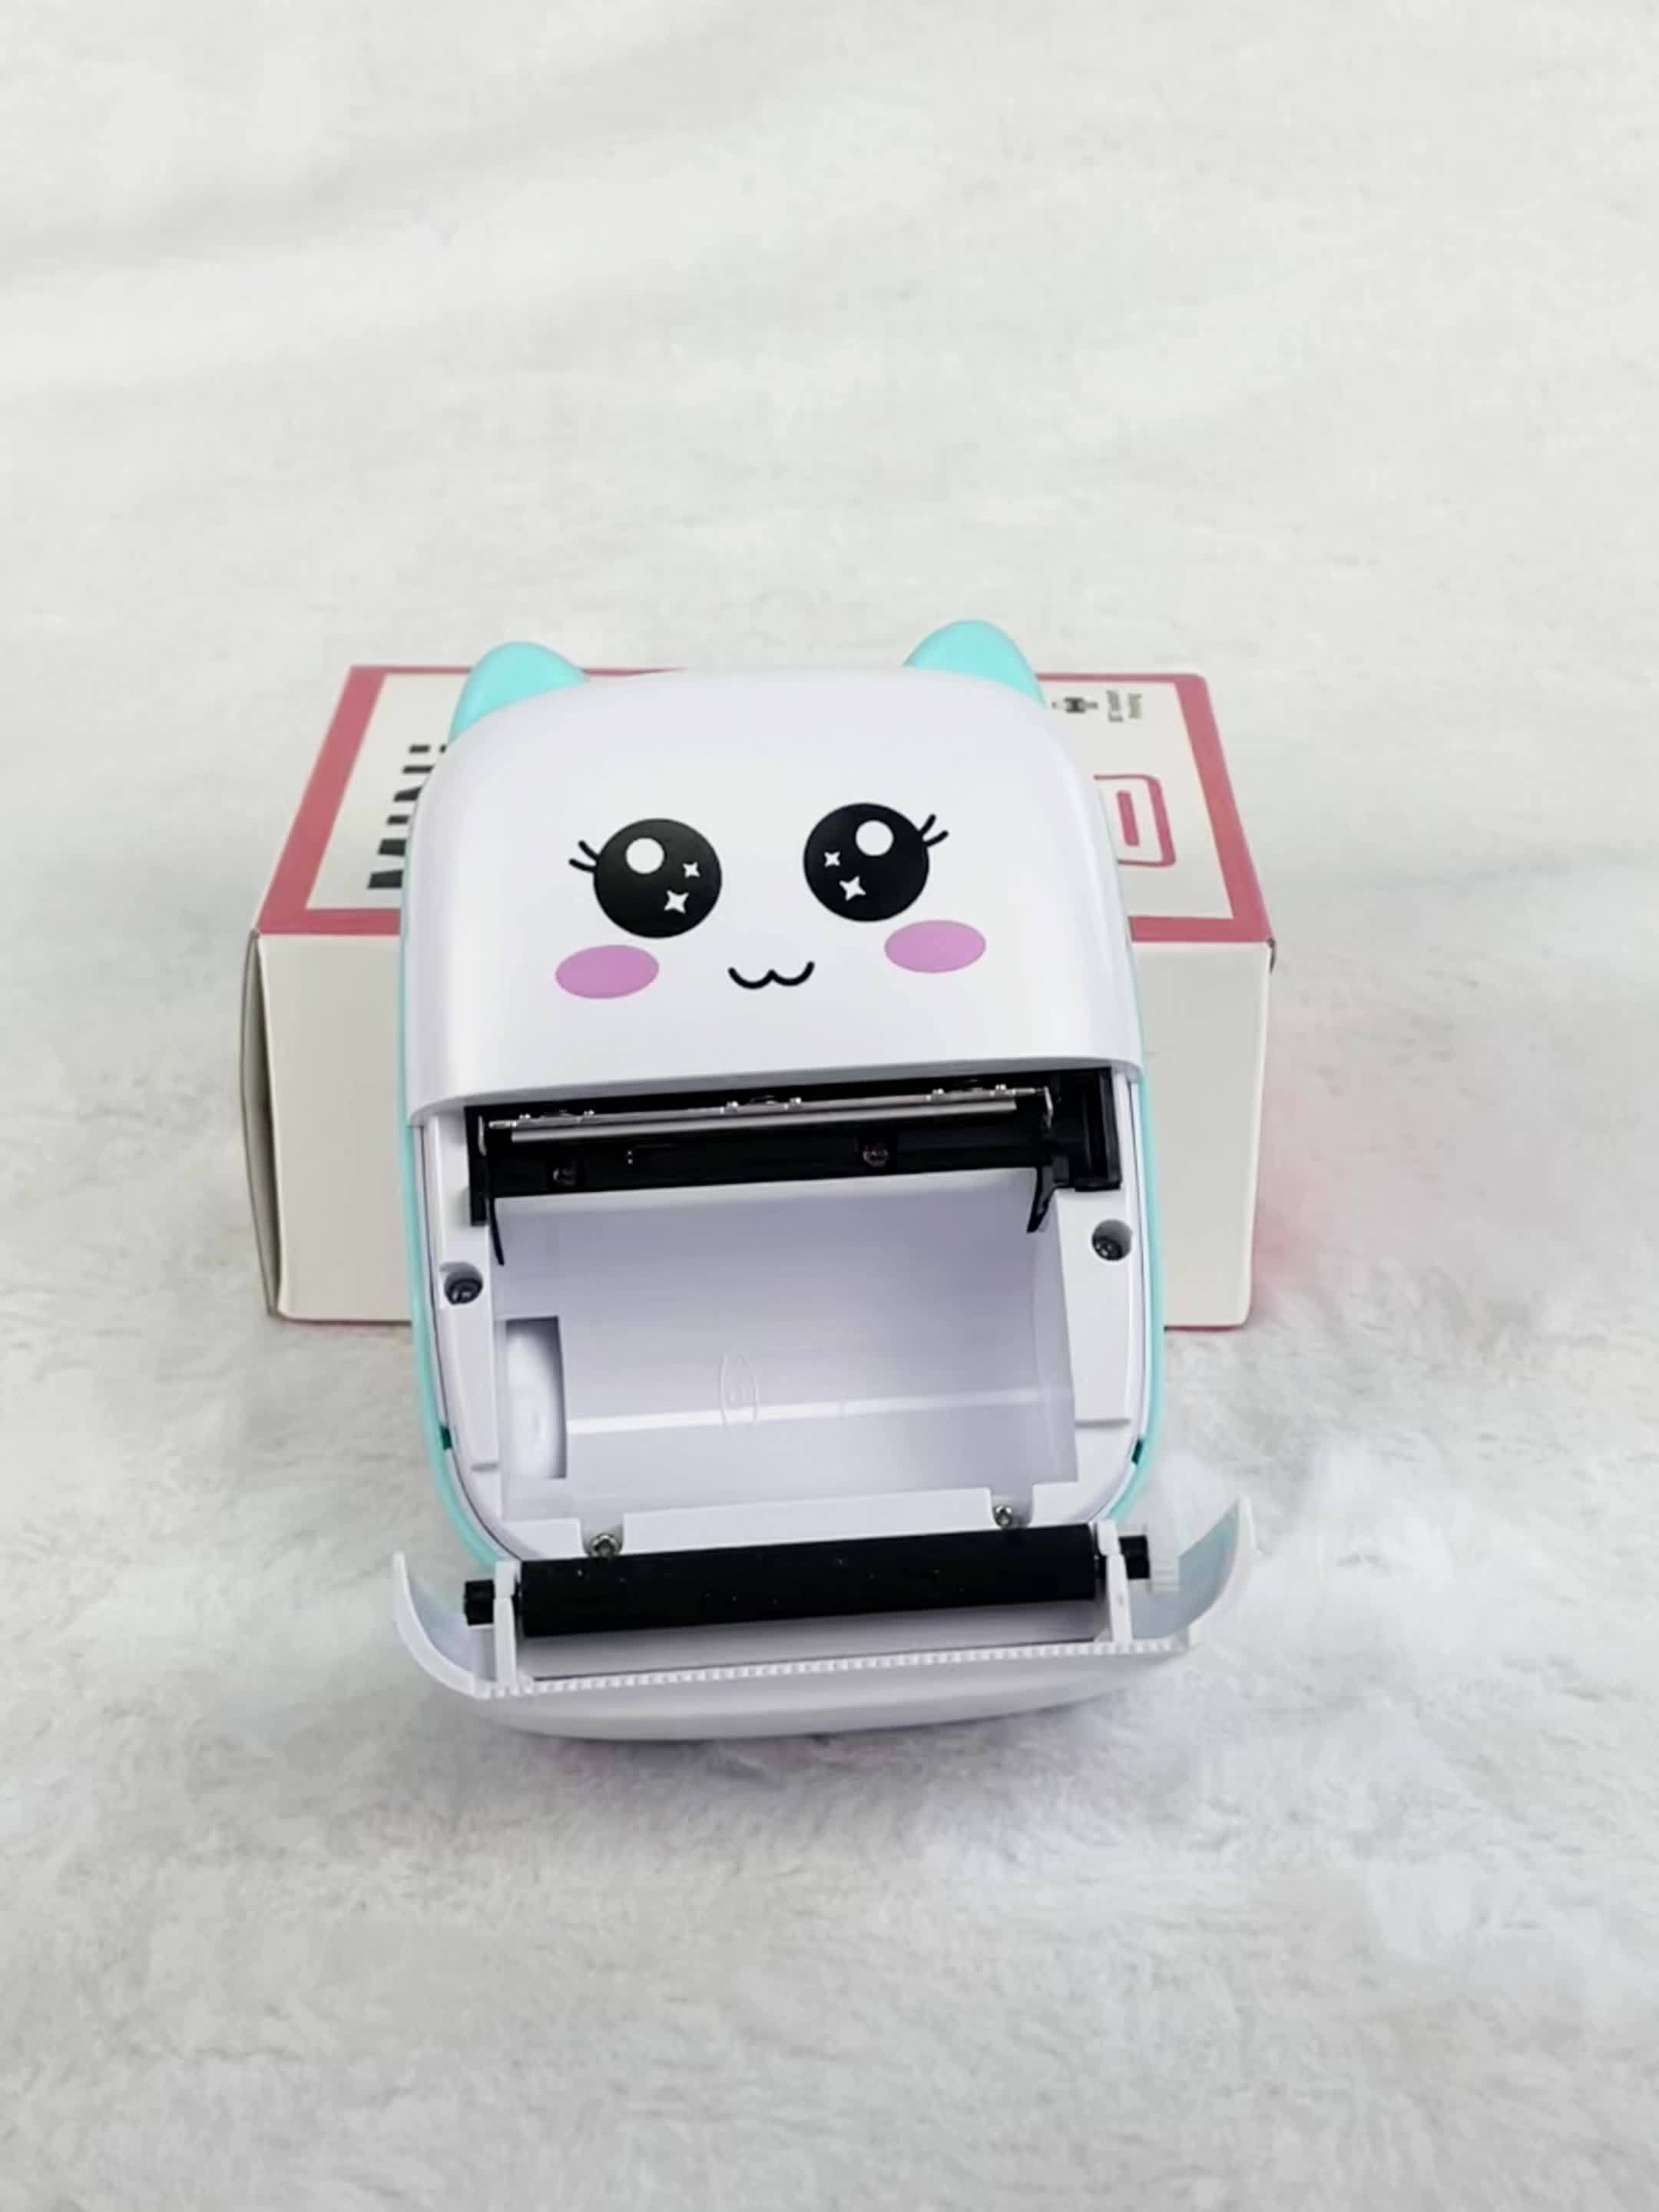 Impresora Térmica Mini Impresora Móvil Impresora Portátil Bluetooth Para  Ayuda En El Aprendizaje, Diario, Diversión, Trabajo, Notas